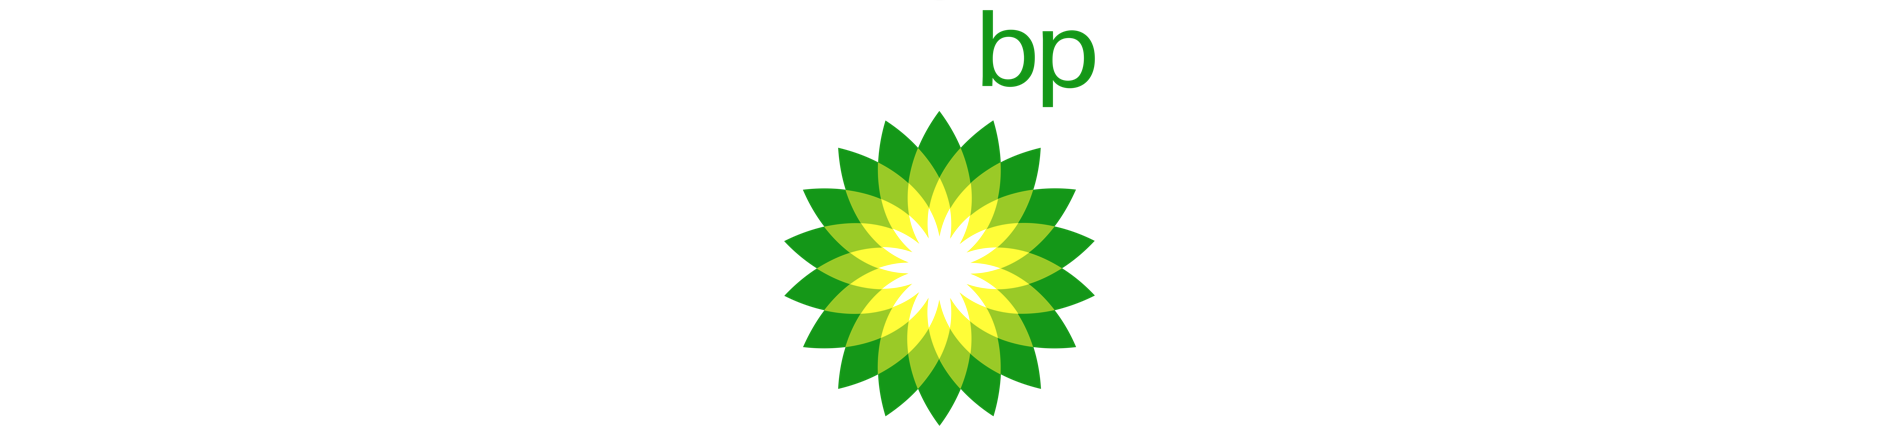 bp logo for website banner.png